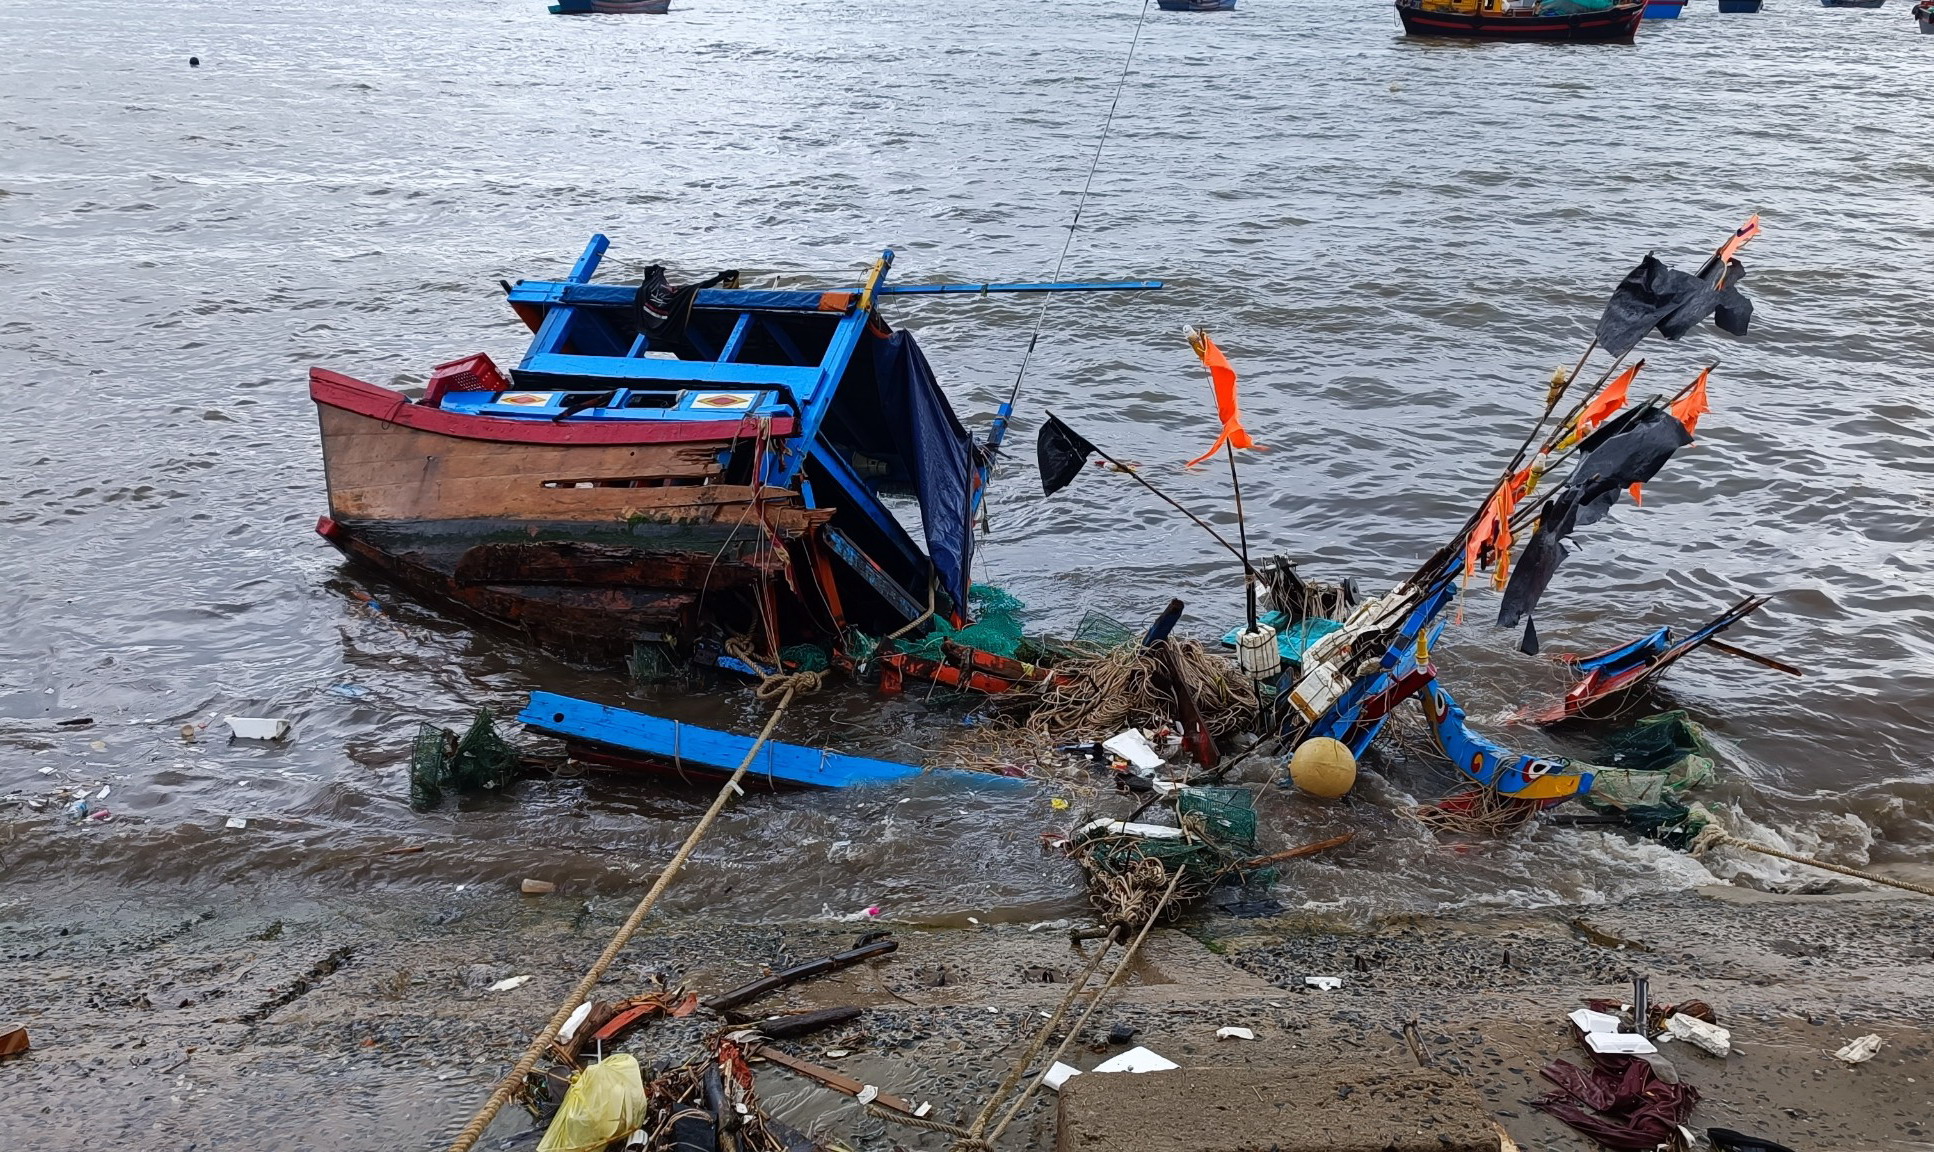 Tàu thuyền của người dân huyện Vạn Ninh, tỉnh Khánh Hòa bị sóng đánh chìm, hư hỏng